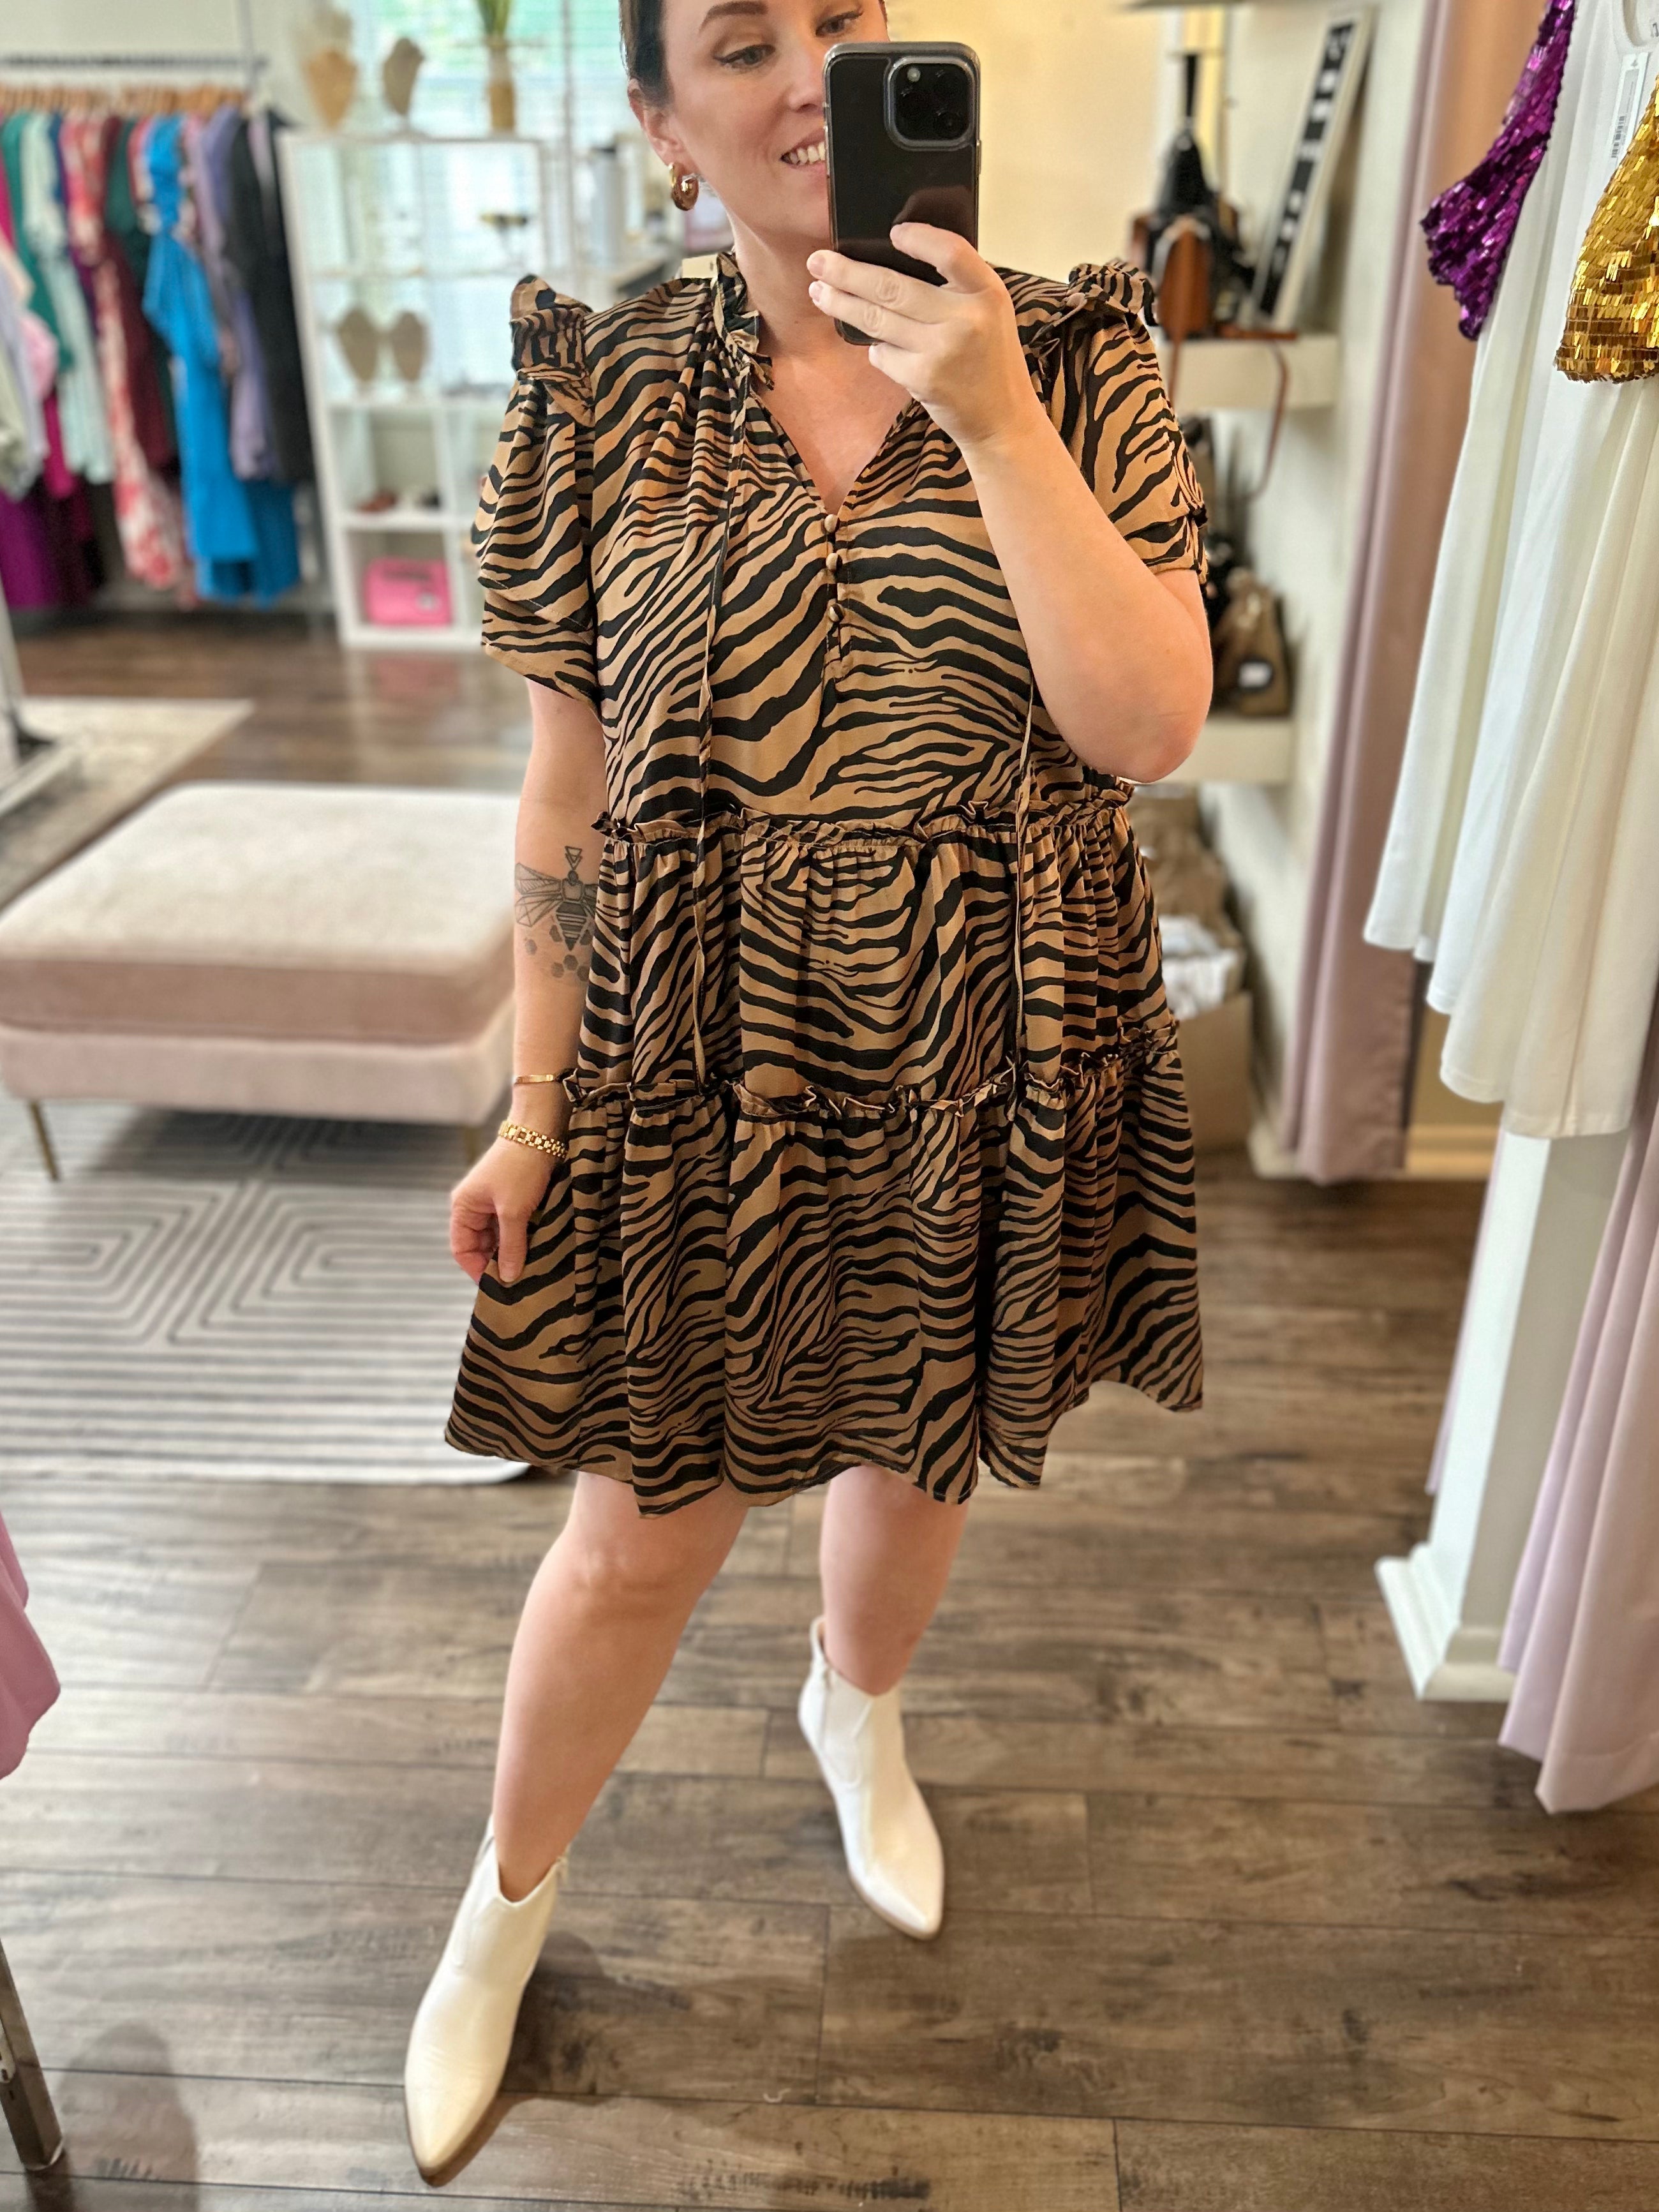 Curvy Tiger Print Mini Dress